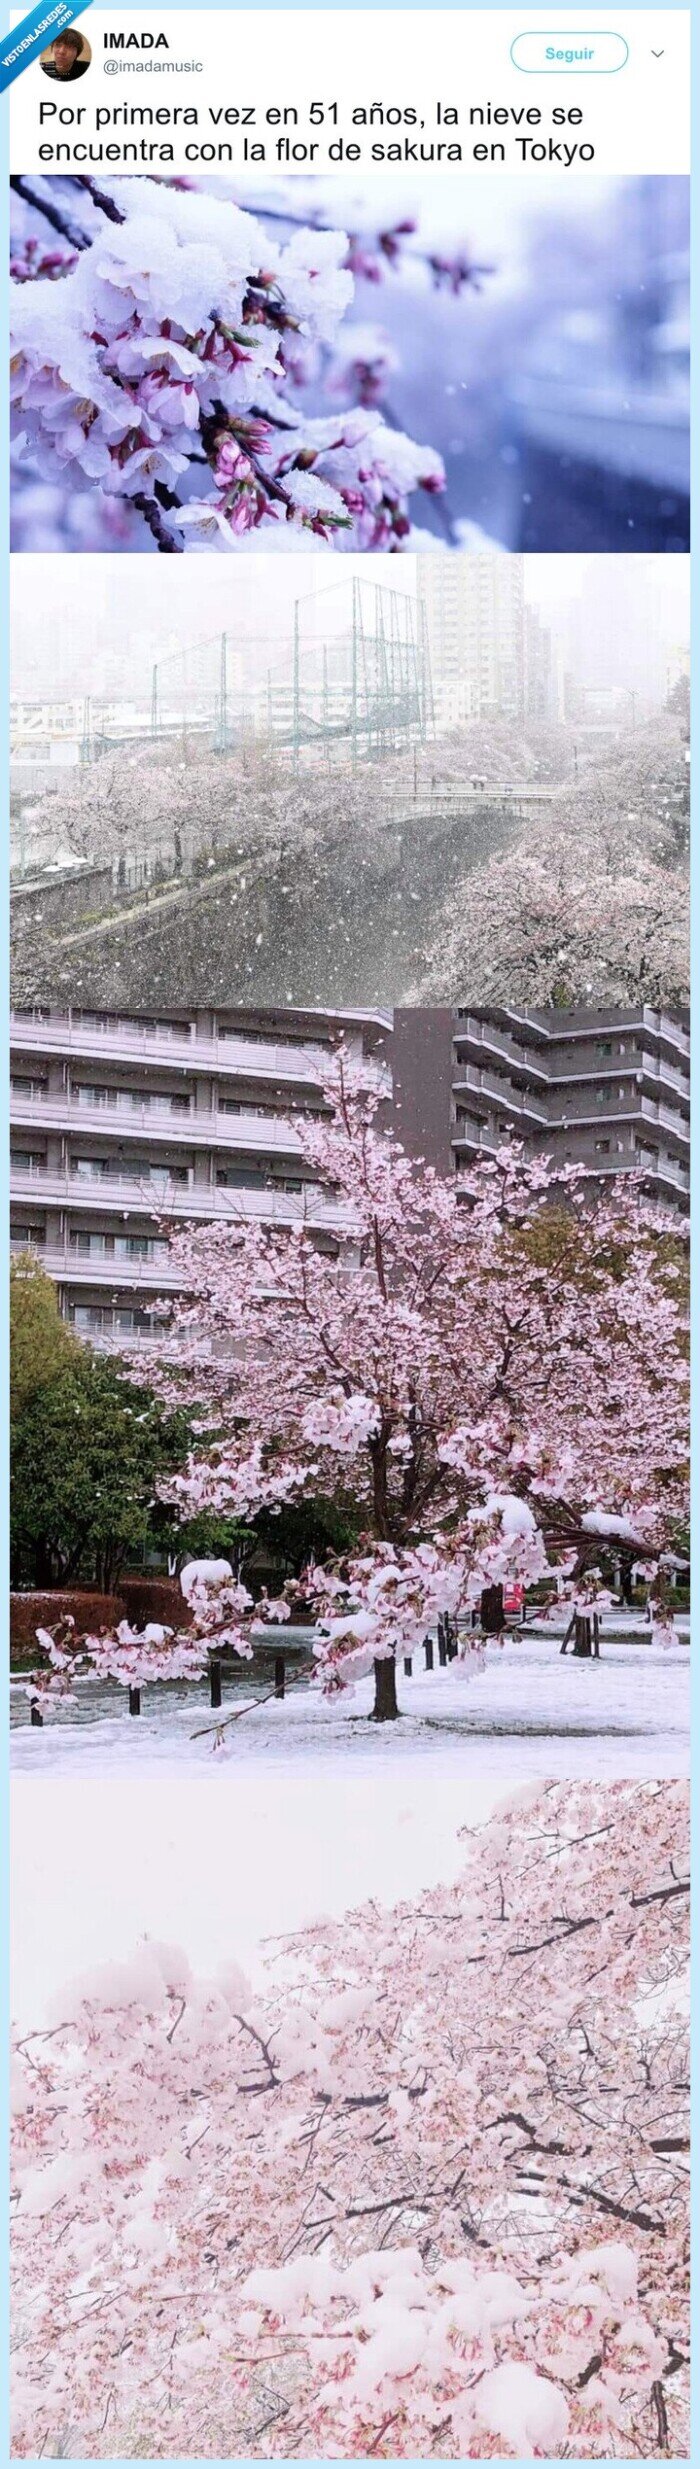 flor de cerezo,japón,sakura,nieve